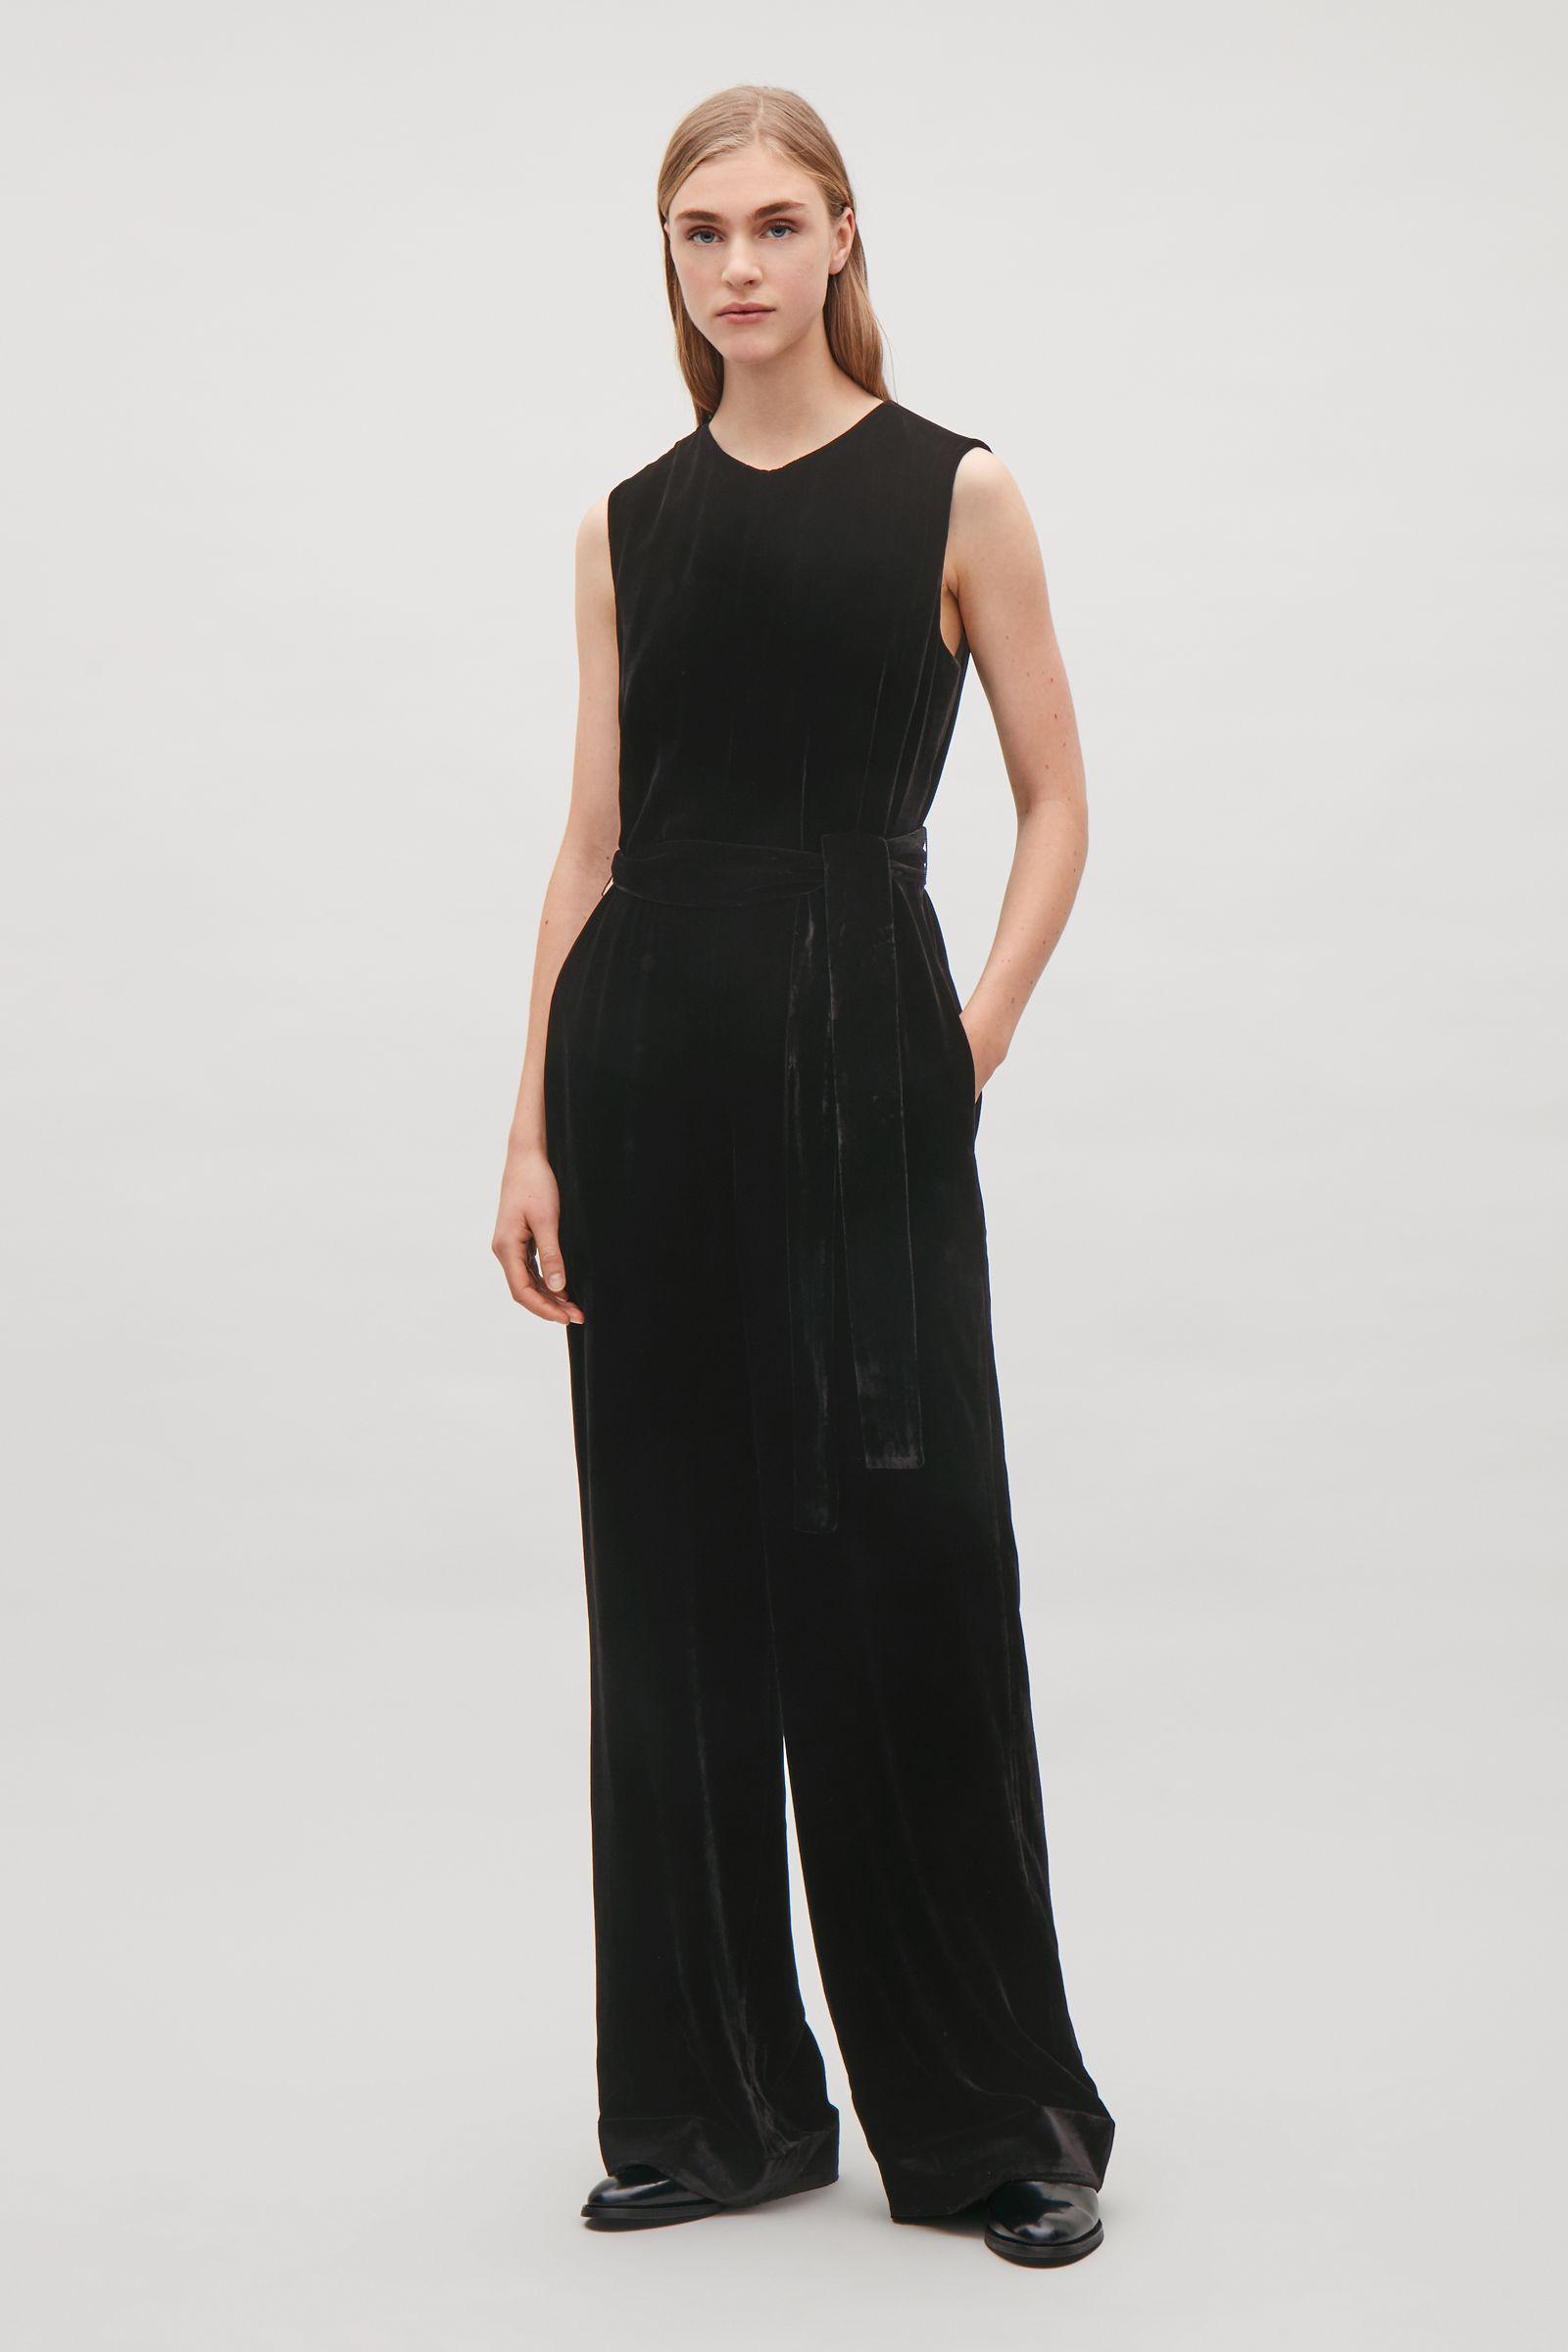 Lyst - Cos Belted Velvet Jumpsuit in Black